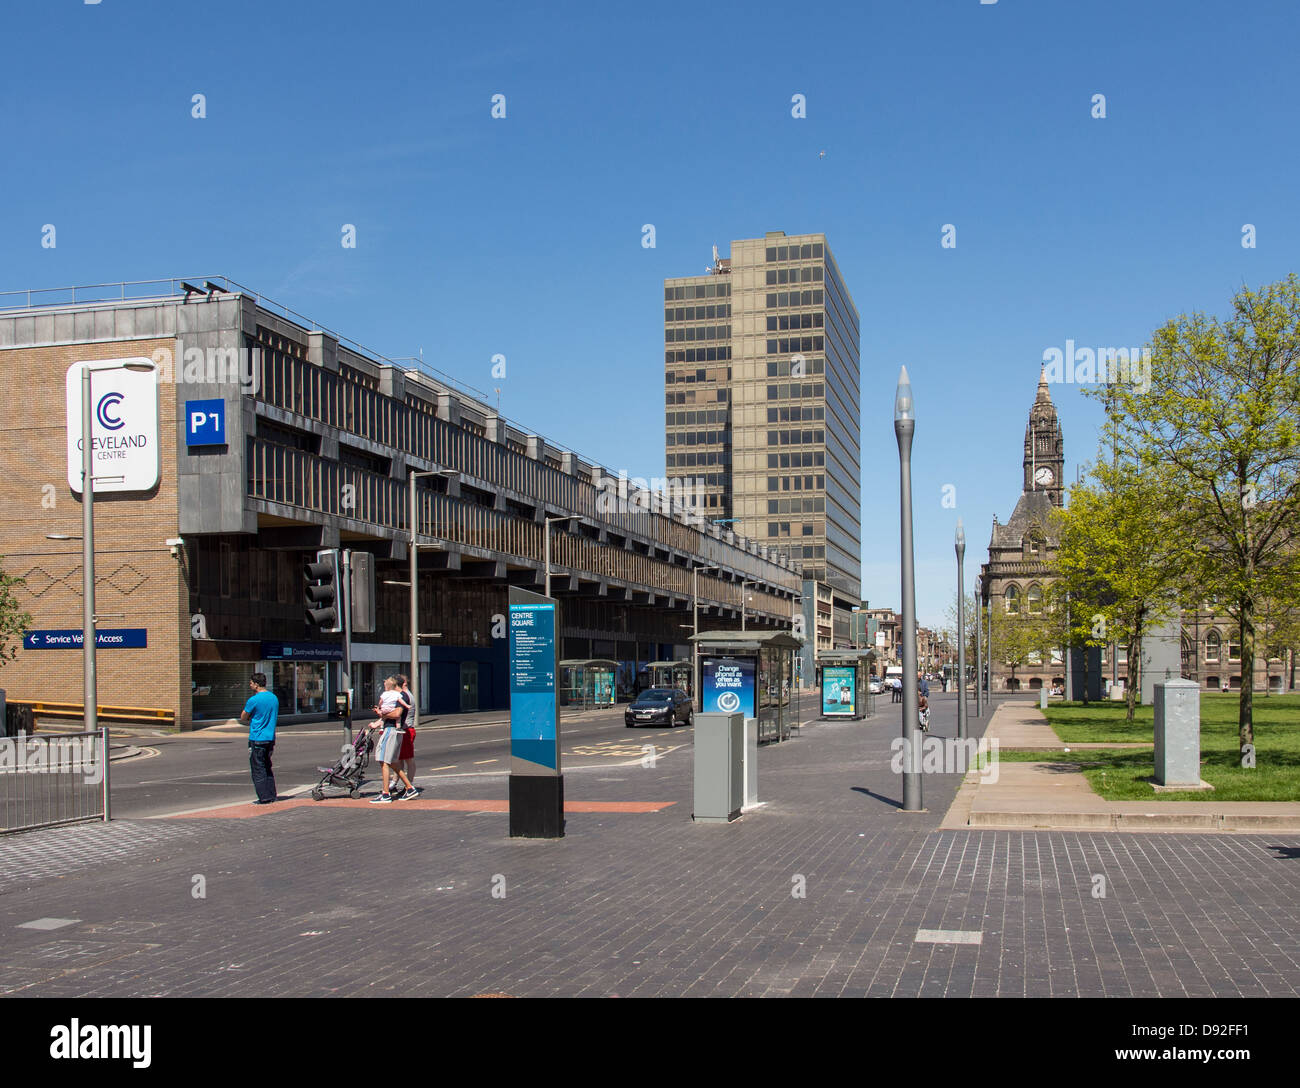 El centro de Cleveland y el Ayuntamiento Middlesbrough UK Foto de stock